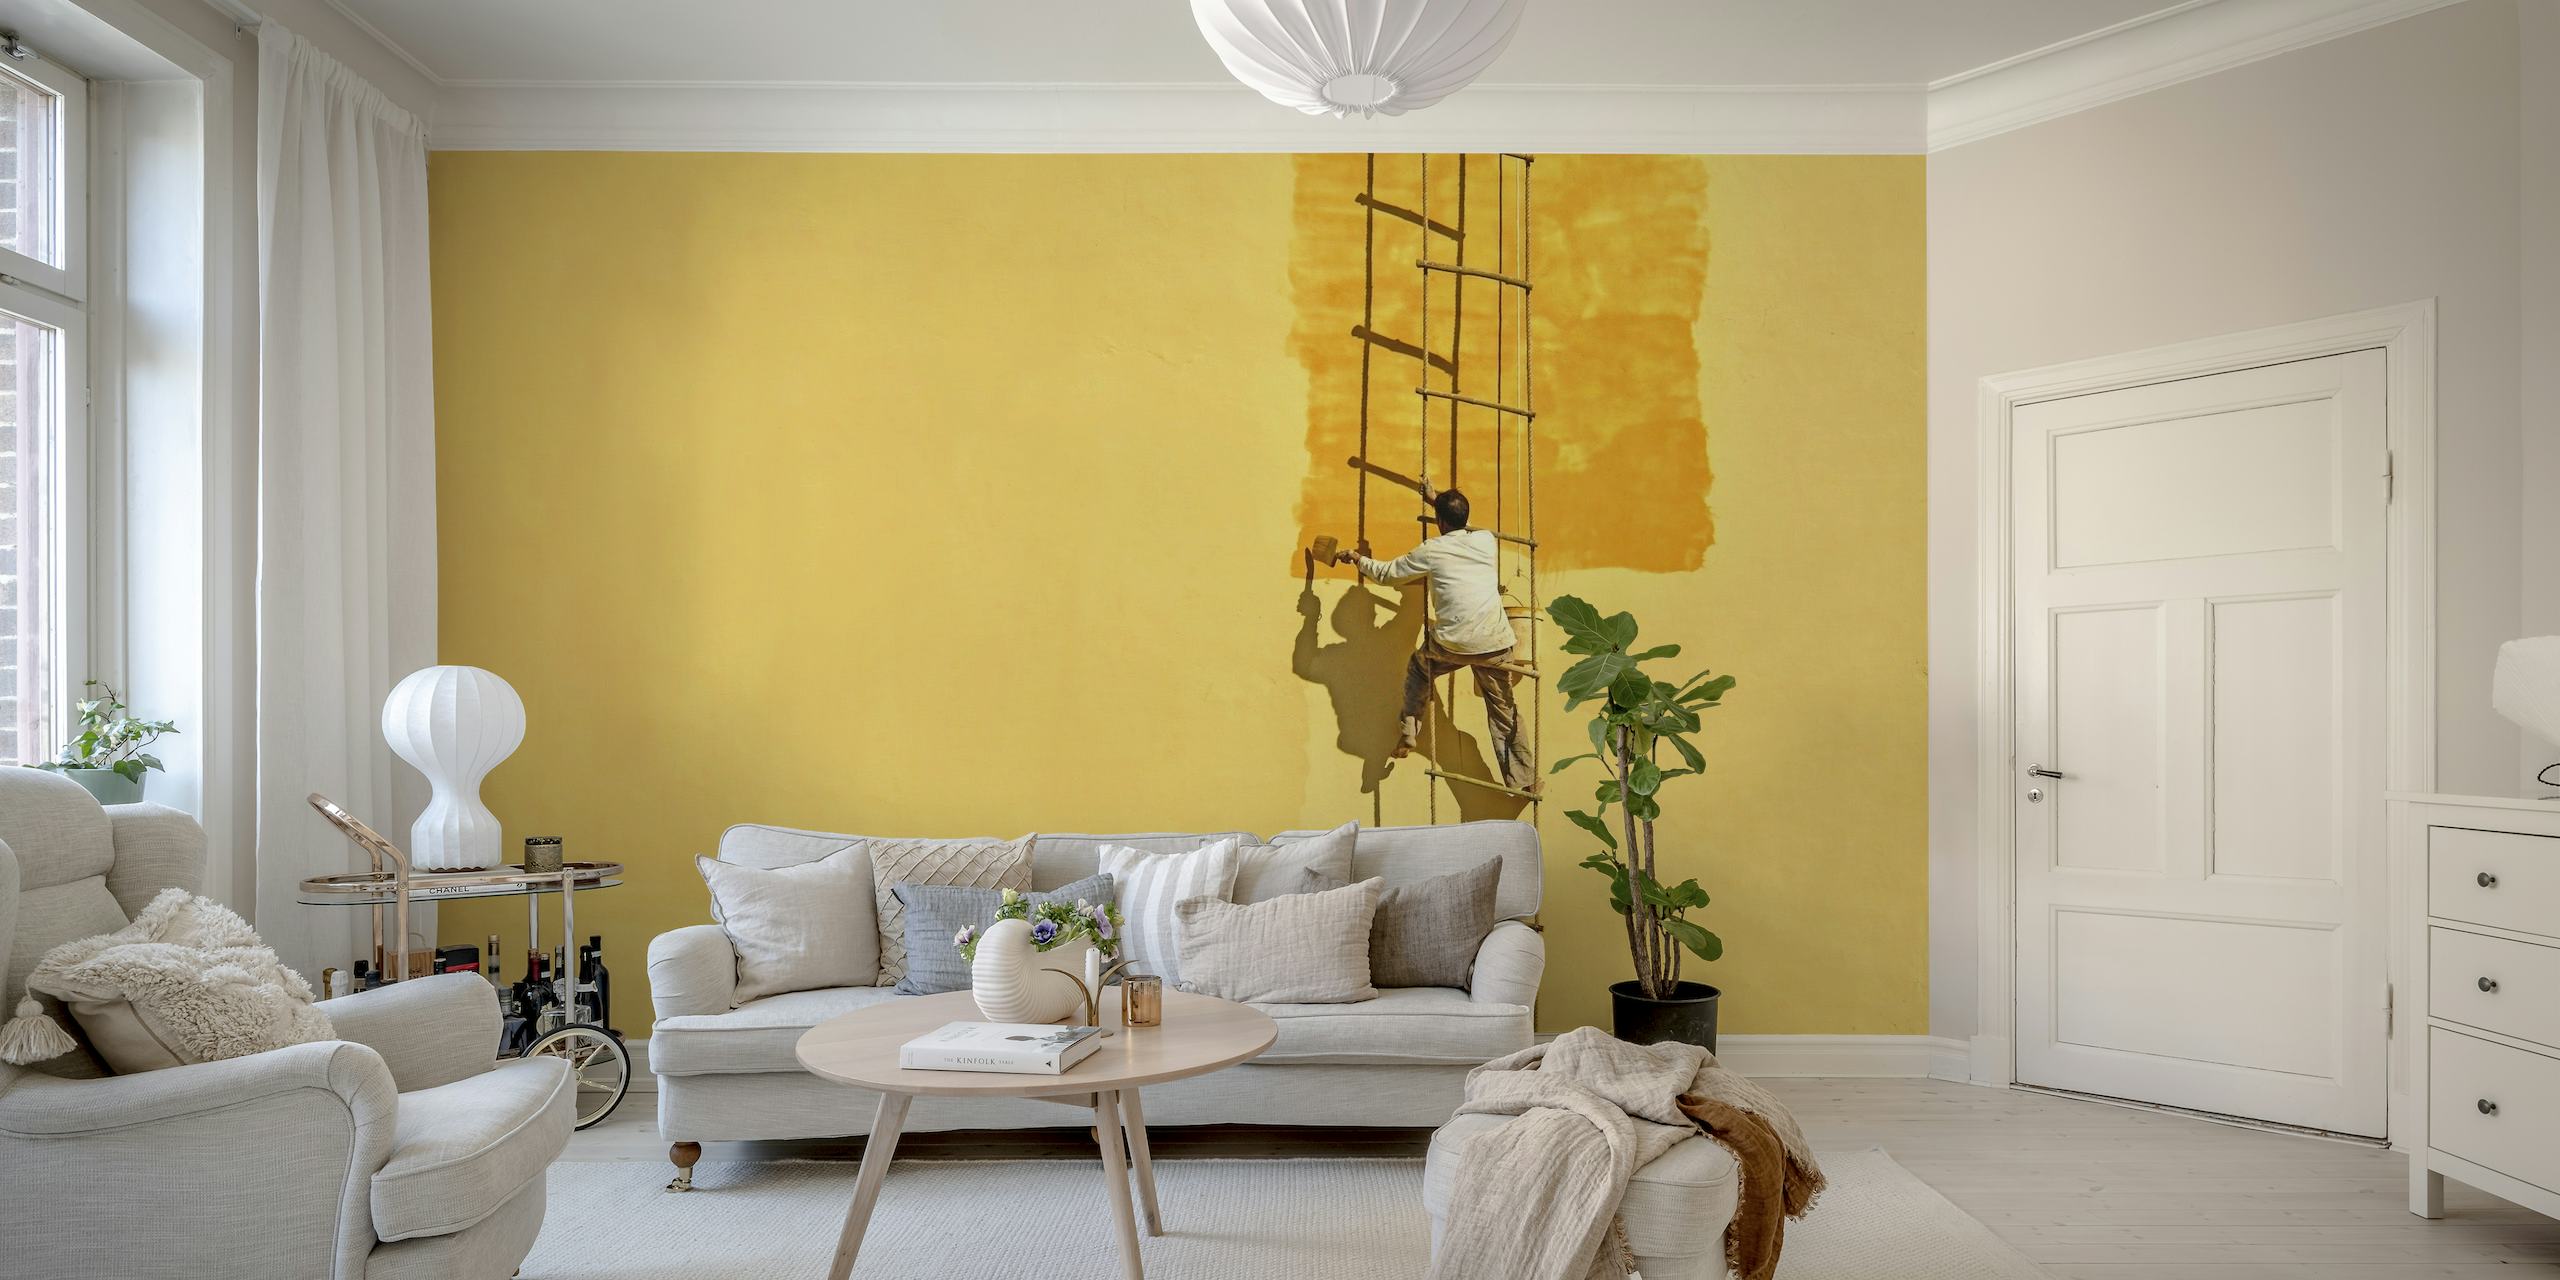 Silhouette eines Malers auf einer Leiter vor einem gelben Wandgemälde